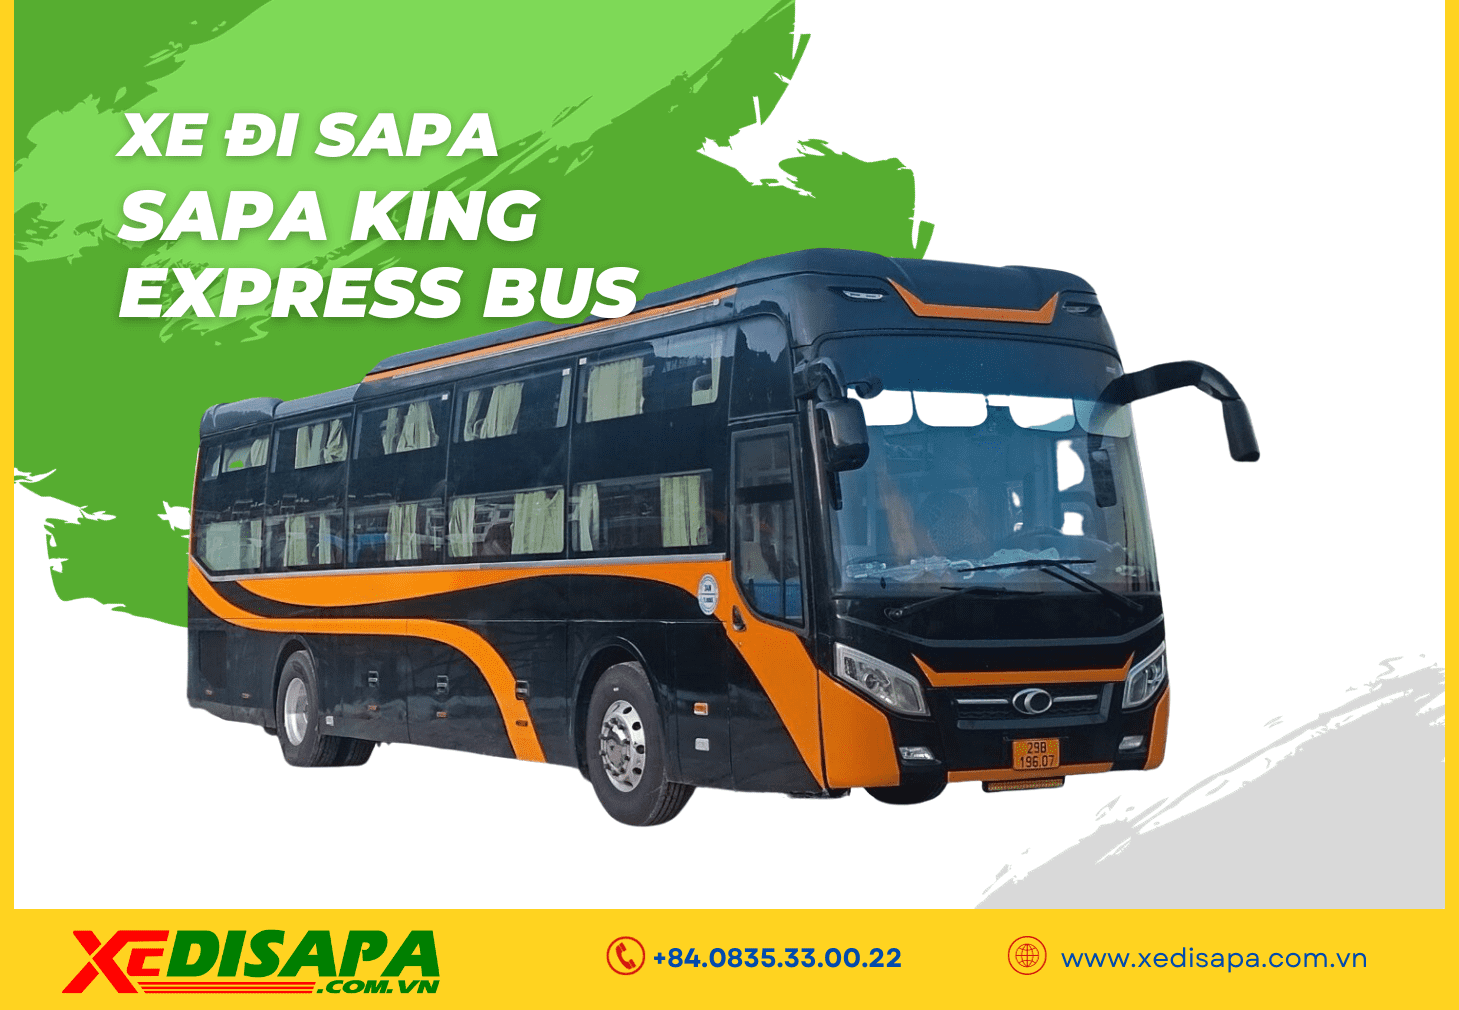 Sapa King Express Bus